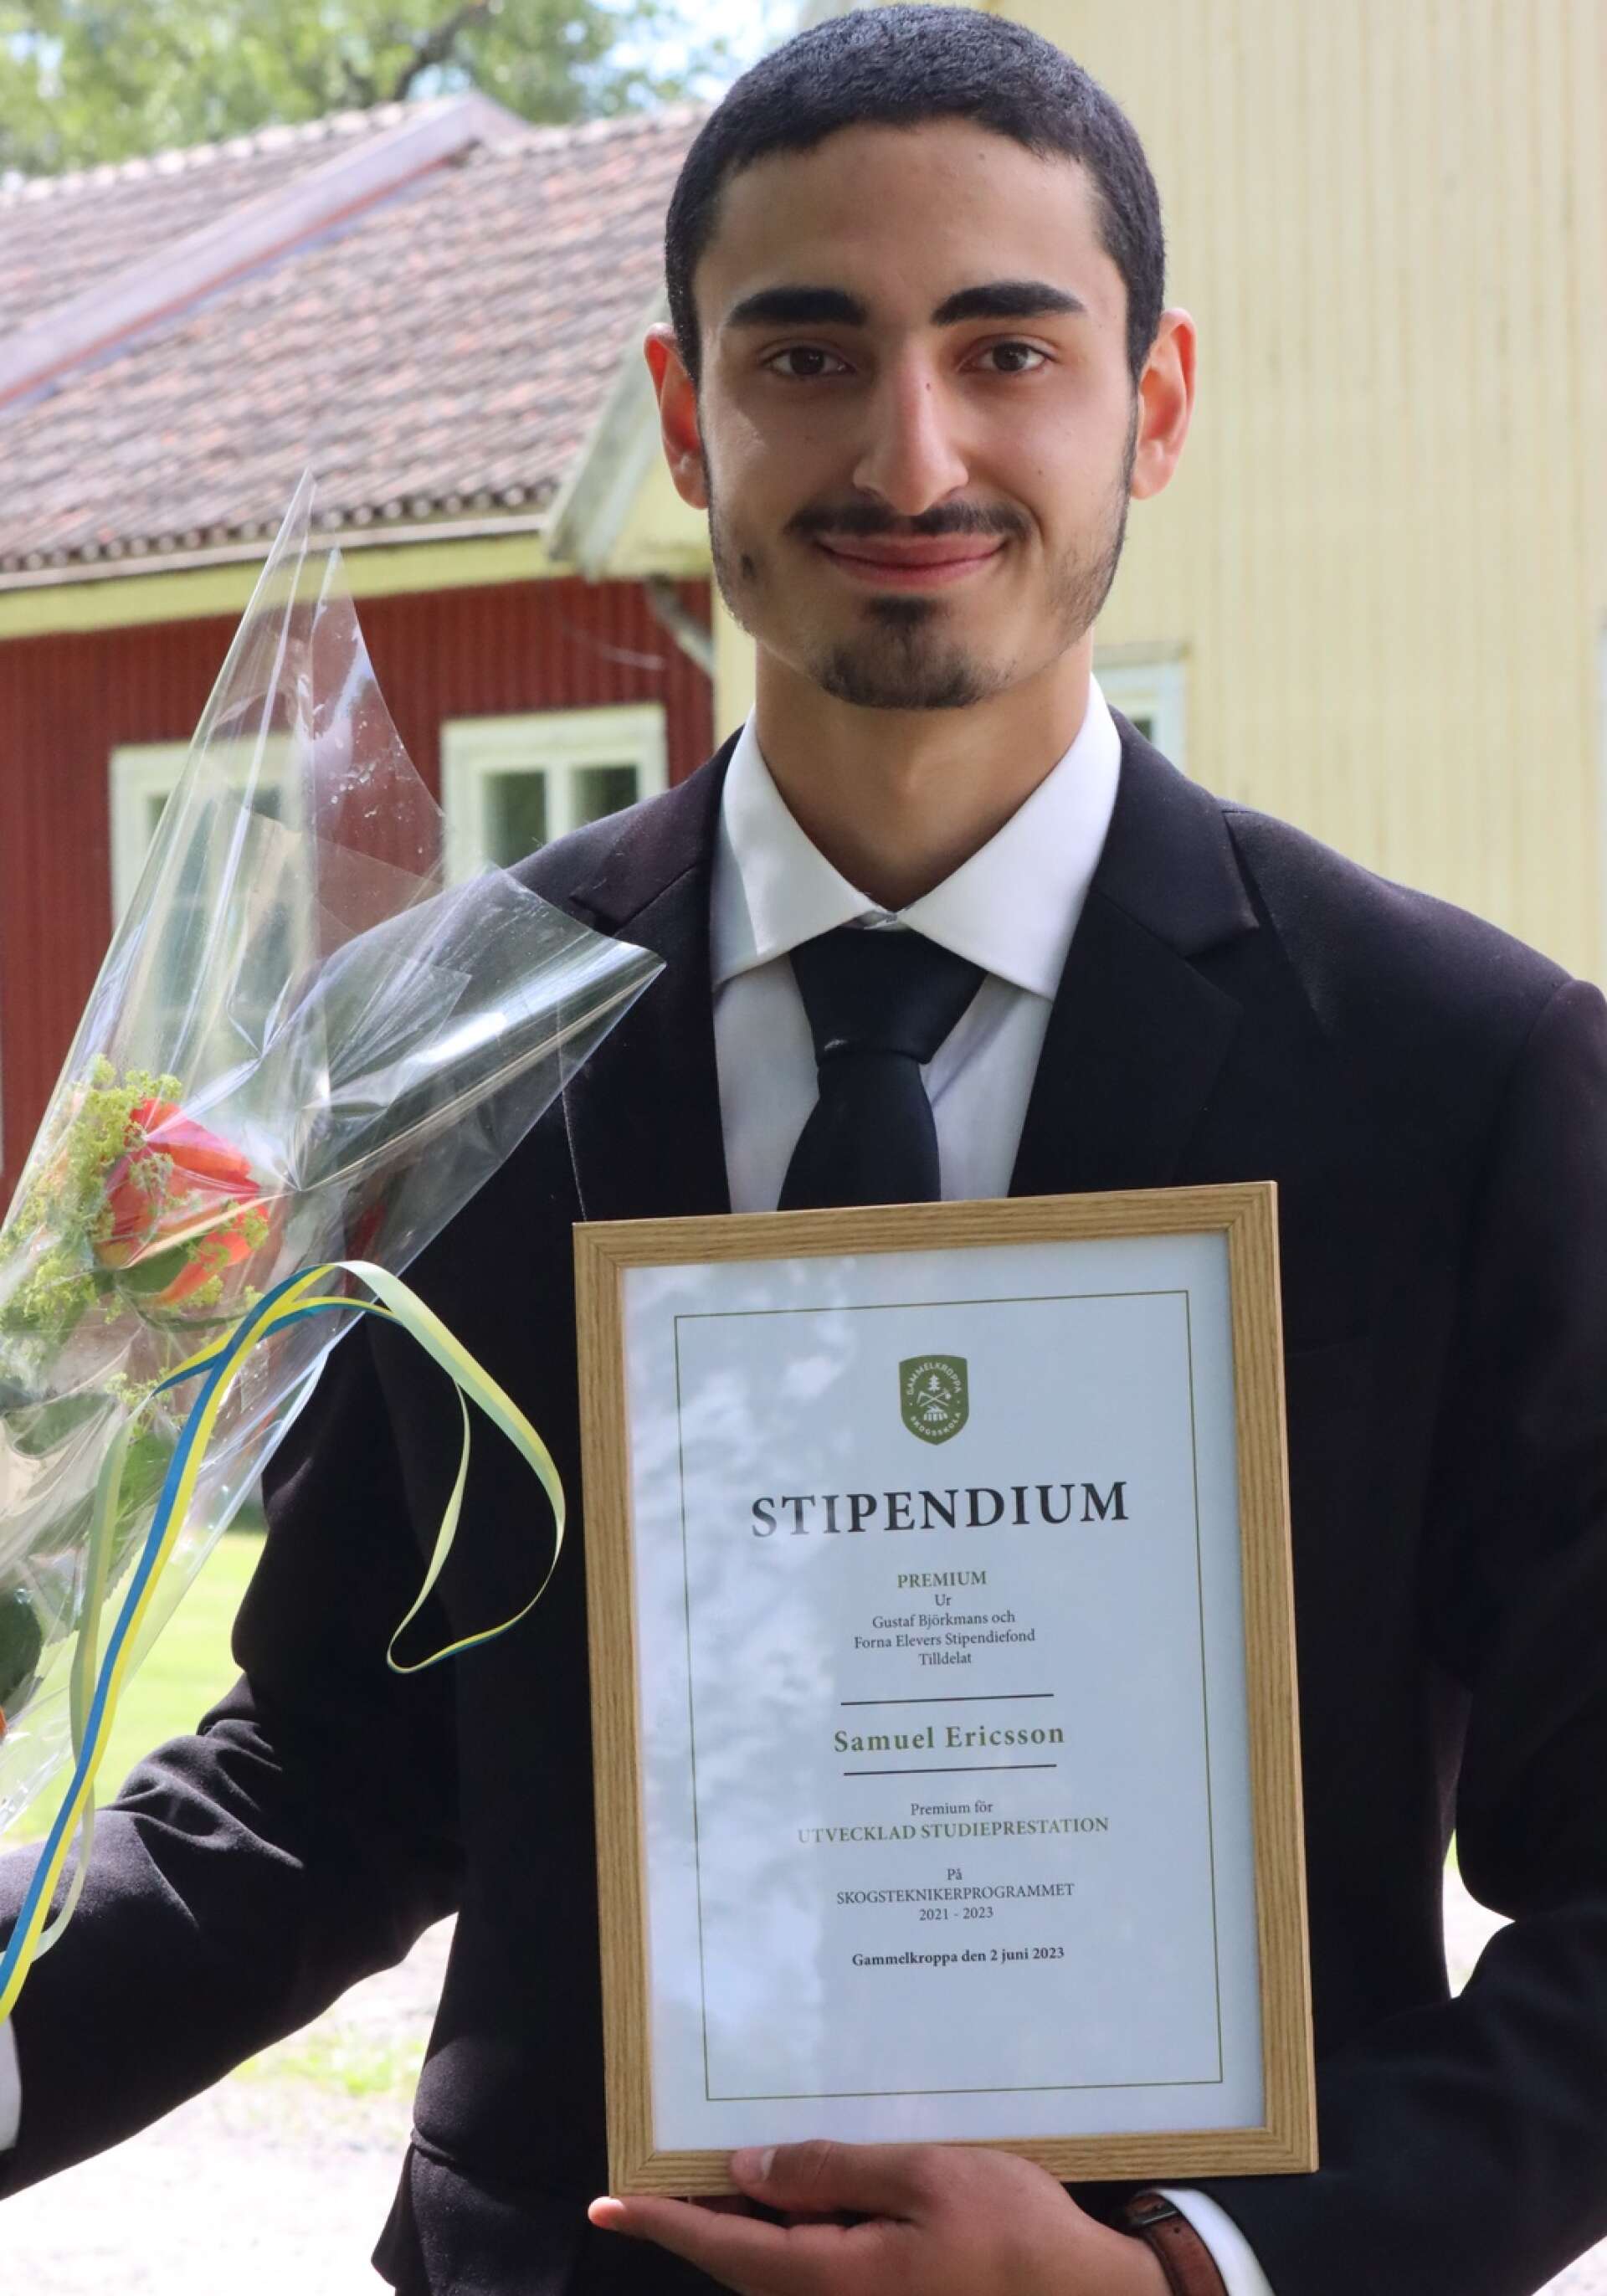 Gammelkroppa skogsskola hade sin examen för skogsteknikerna under fredagen. Samuel Ericsson från Filipstad var en av dem som tog examen.